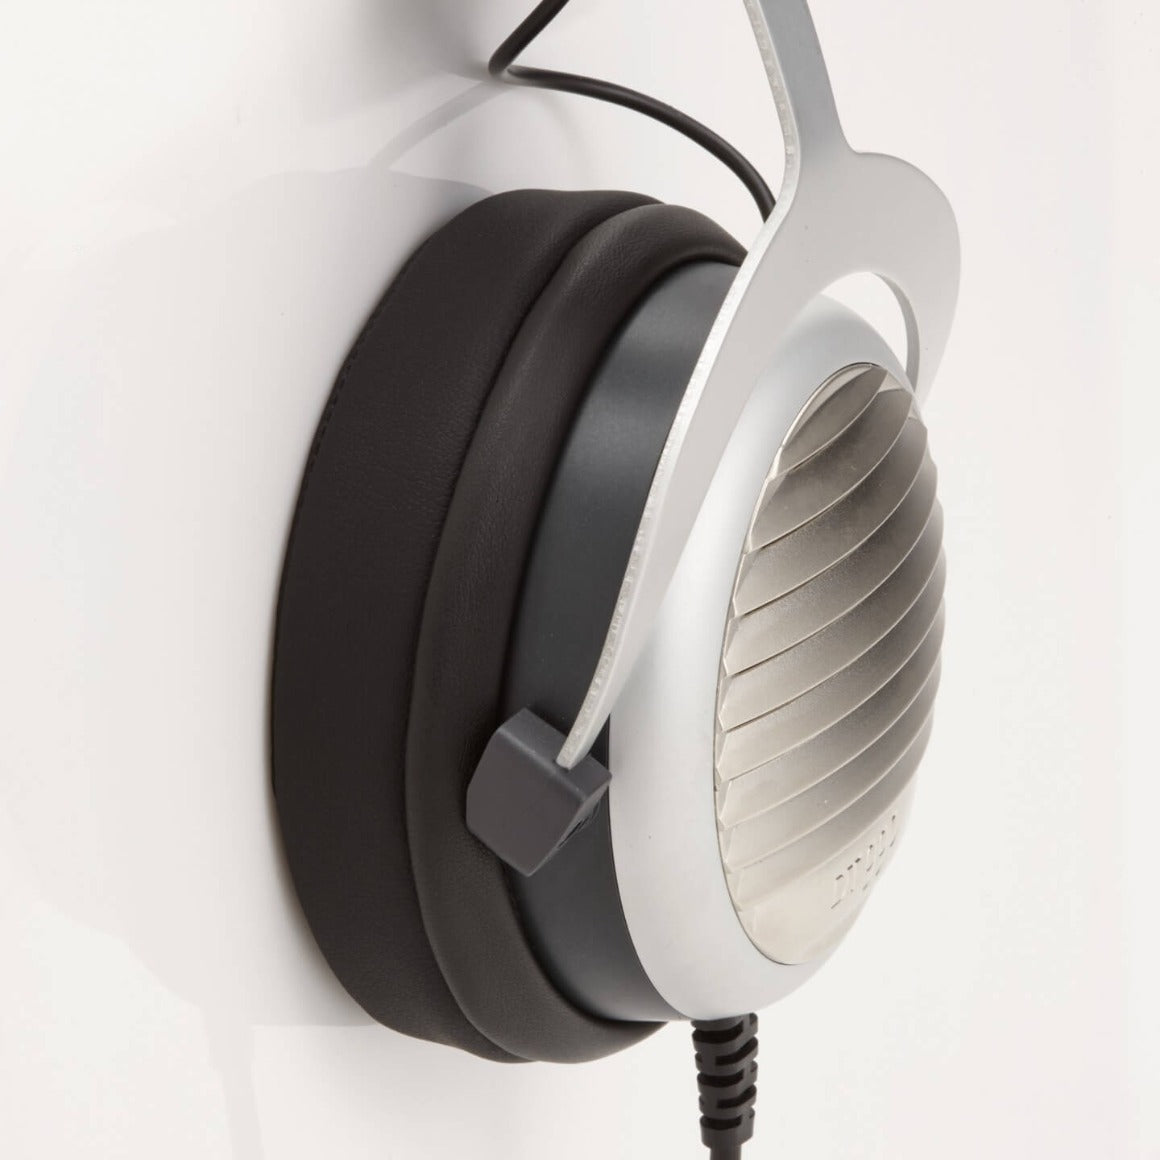 Dekoni Audio - Platinum Series Earpads for Beyerdynamic DT and AKG K Series